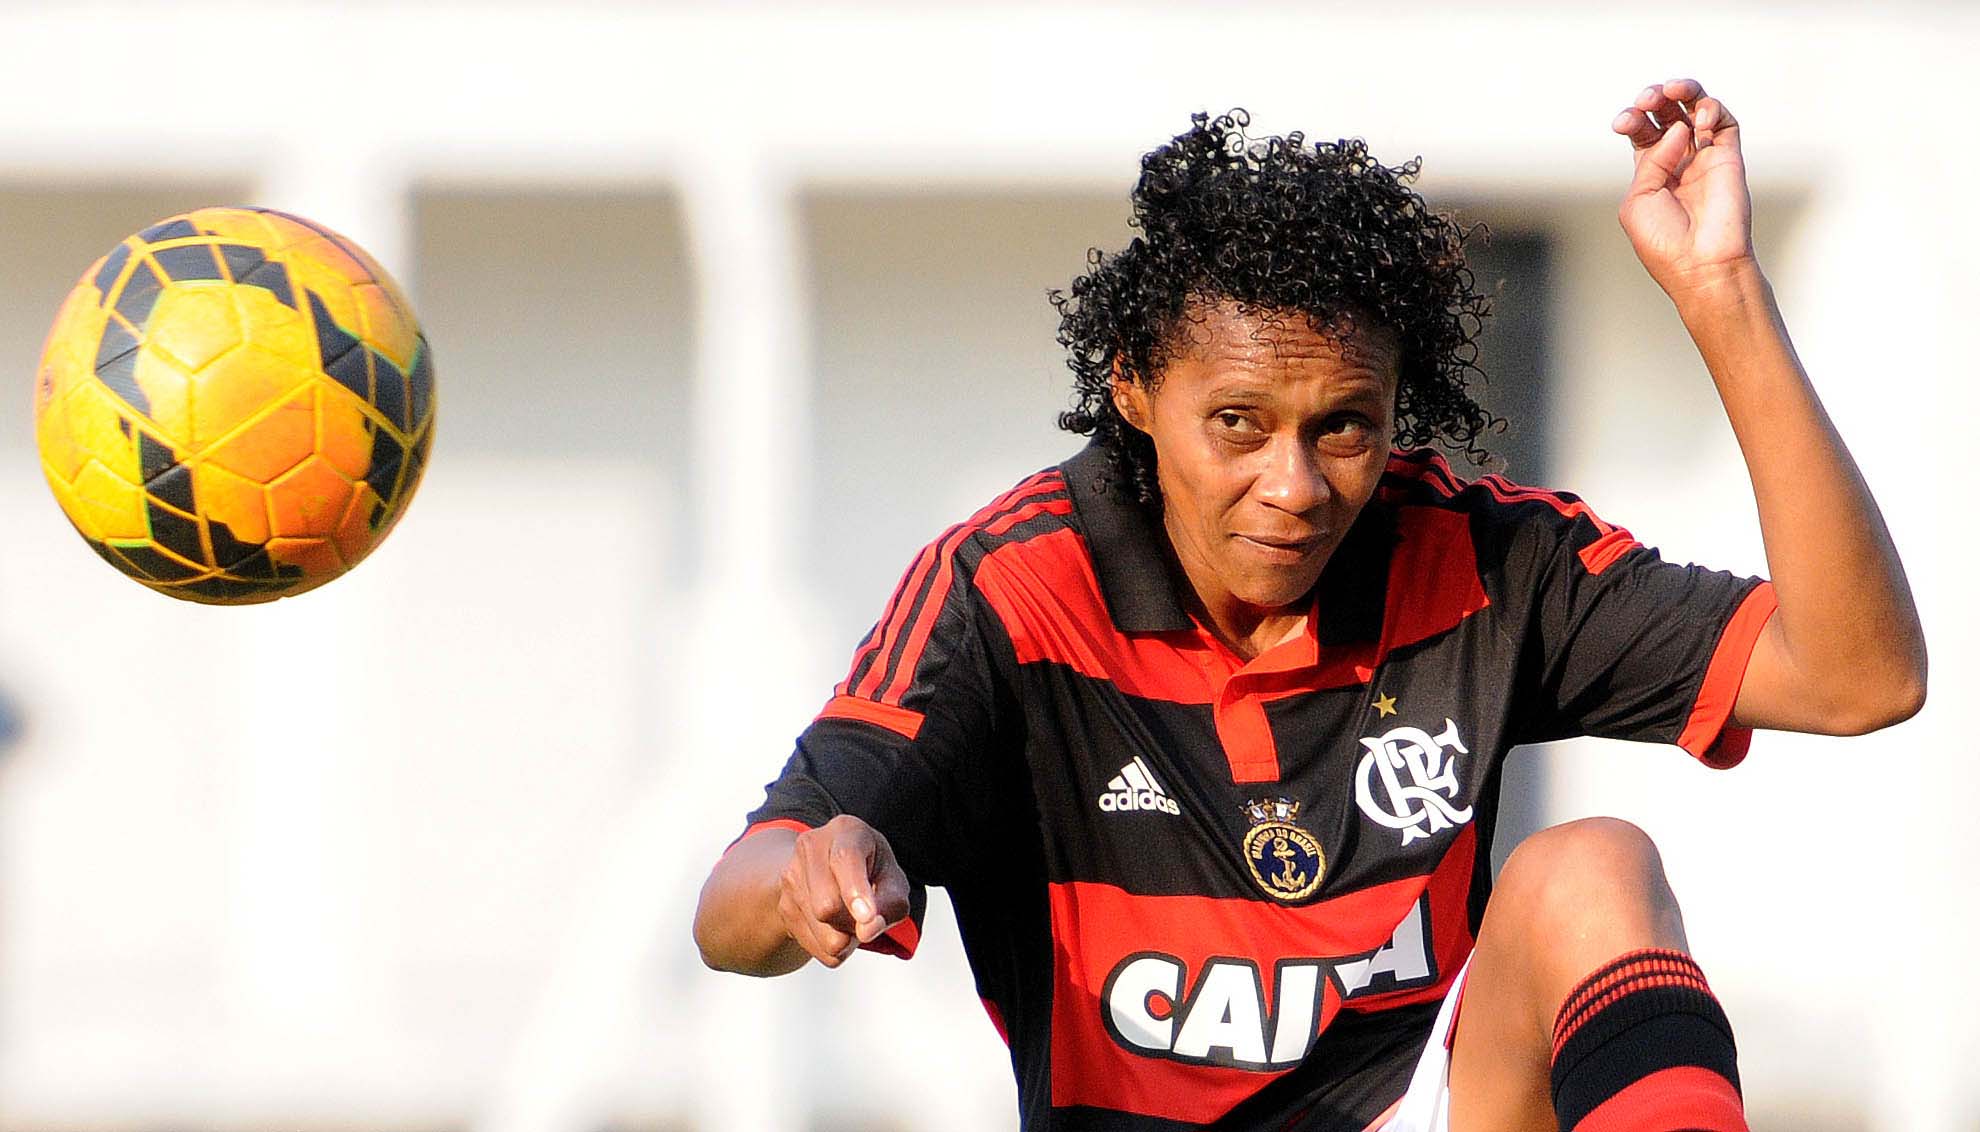 Ferj divulga grupos e tabelas do Campeonato Carioca 2016